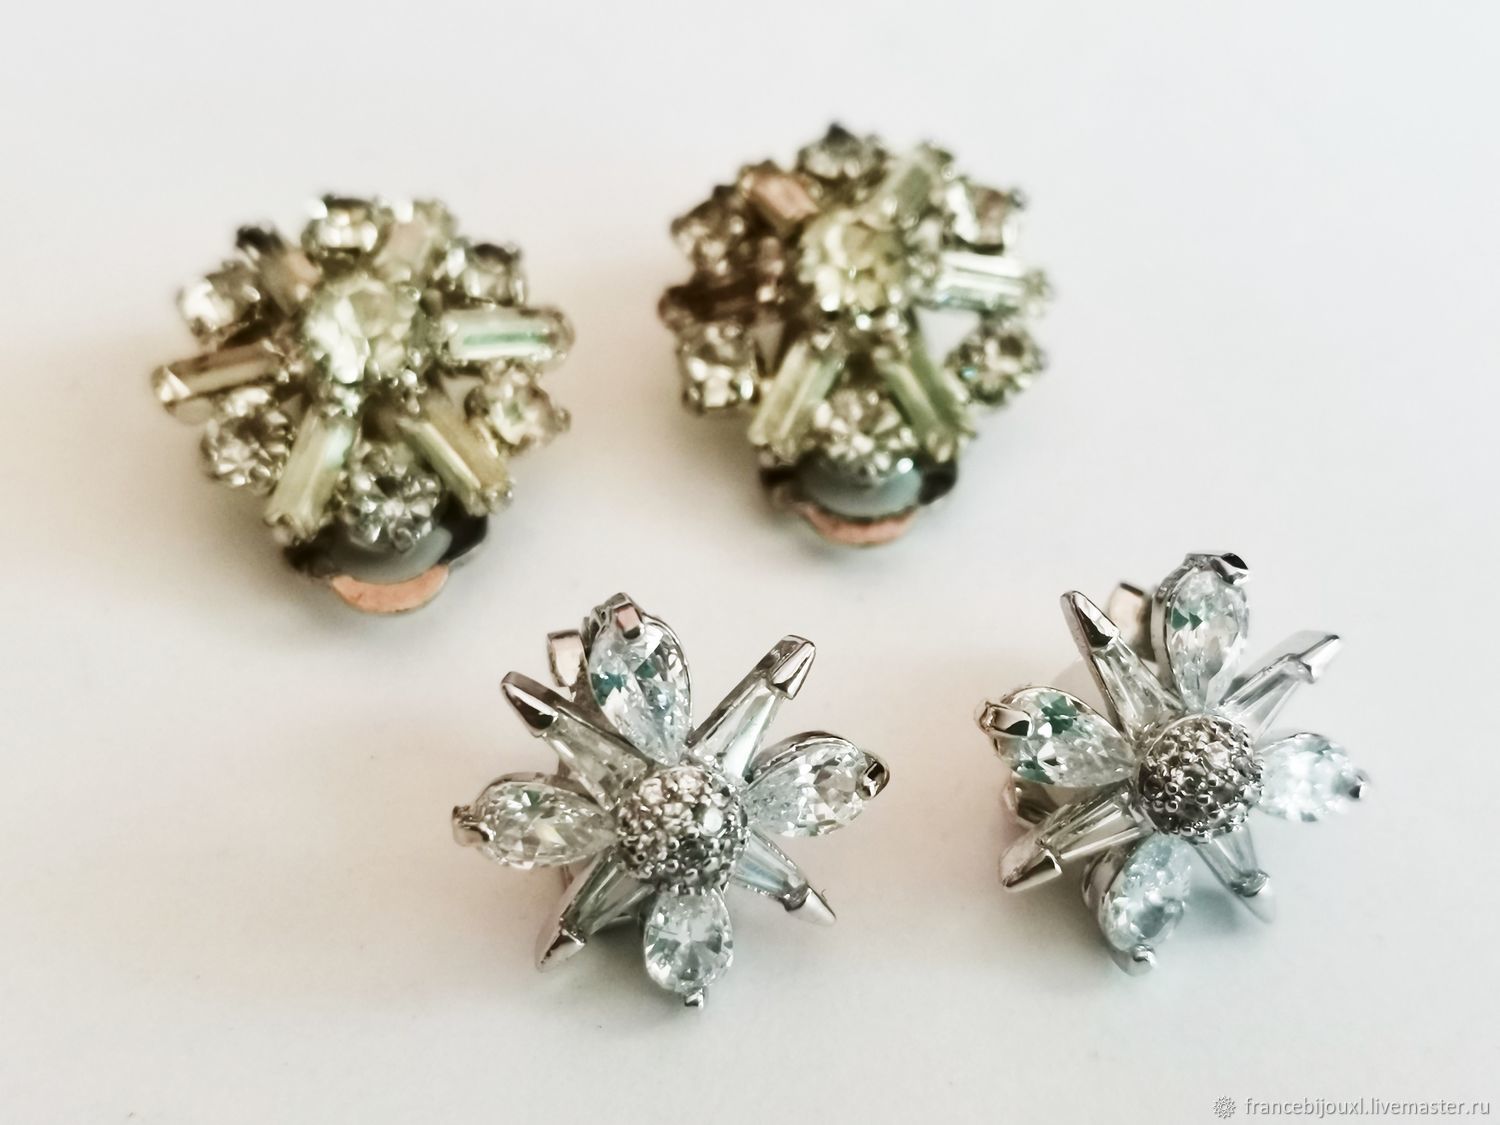 Vintage avon snowflake earrings